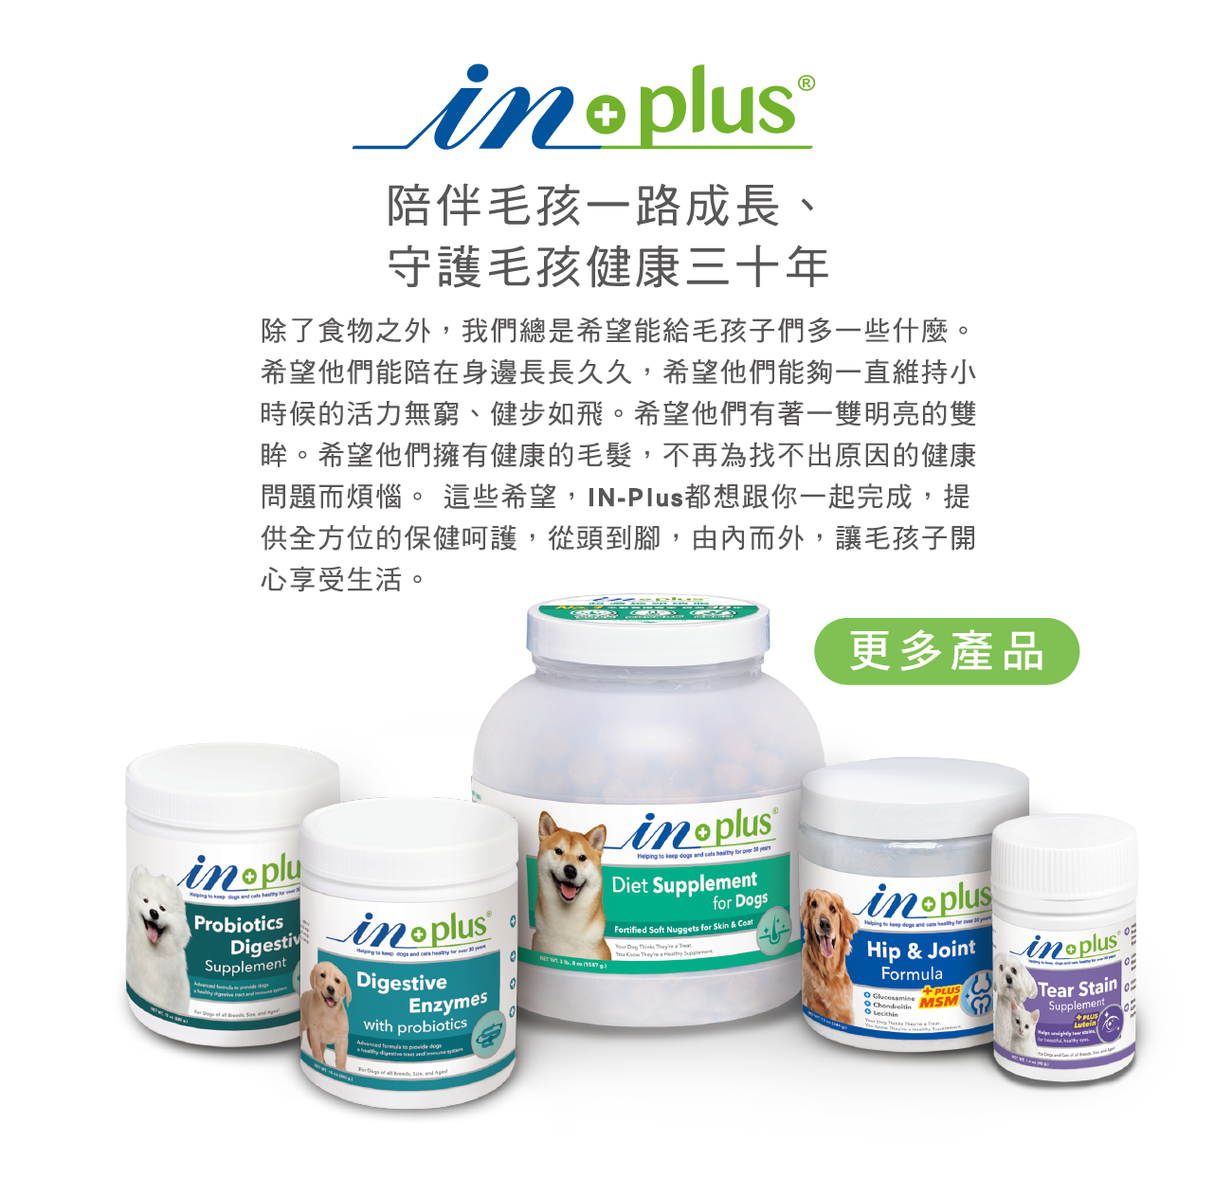 IN-Plus 眼睛保健 護眼晶草本精華素 淚痕敏感養護適用 40g 犬貓視力保健